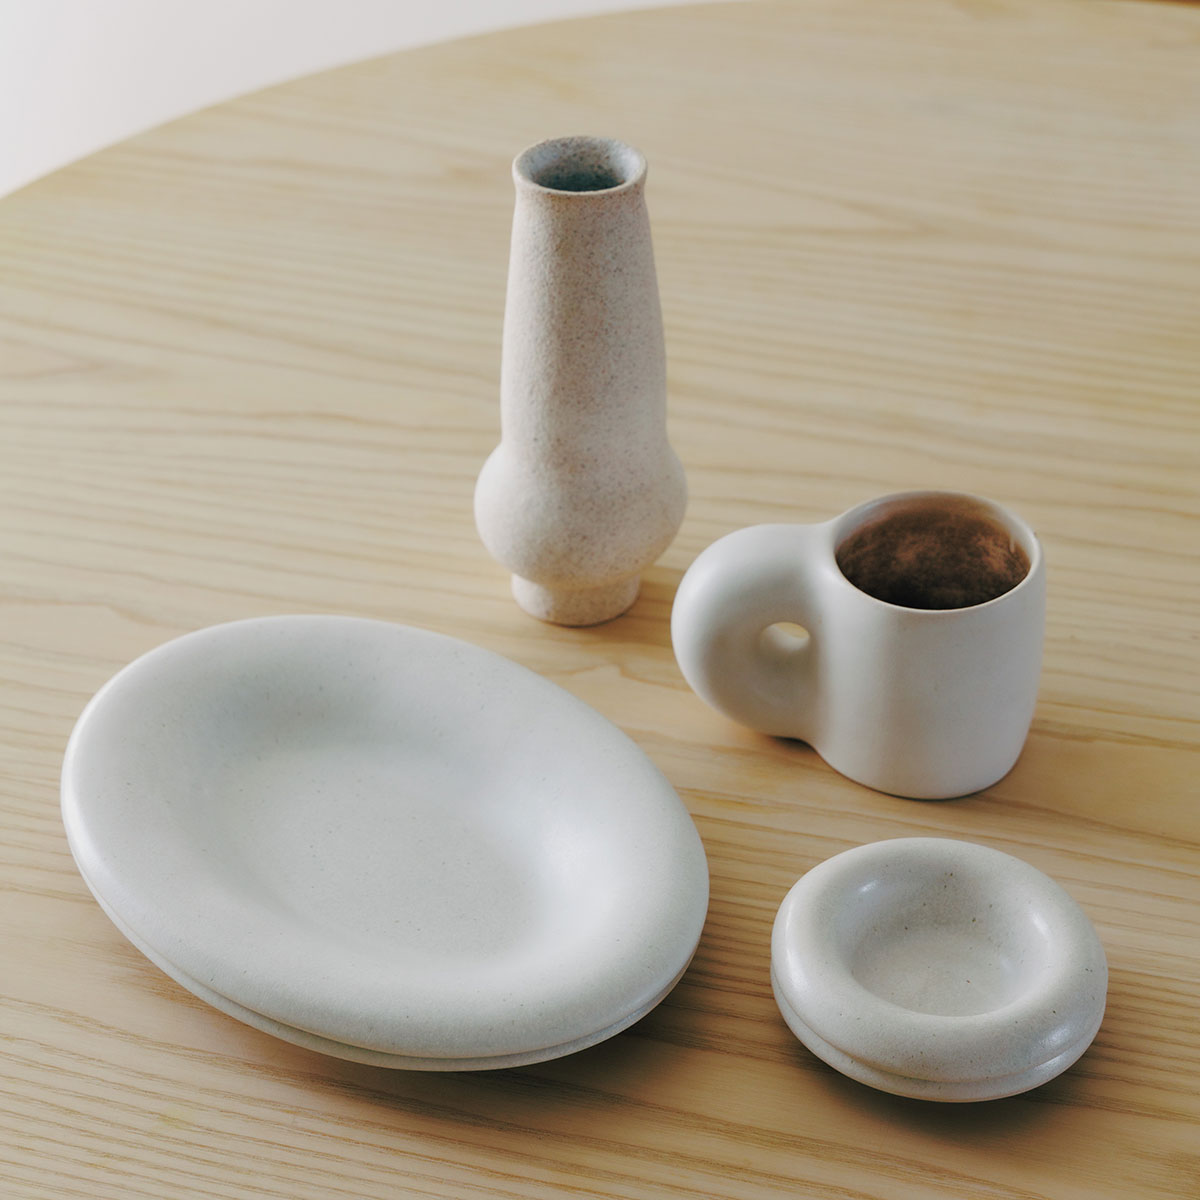 「 この家にしっくりくる白い器をよく使うようになりました」。最近のお気に入りは入江佑子さんの器。花瓶も家の雰囲気と合うと言う。